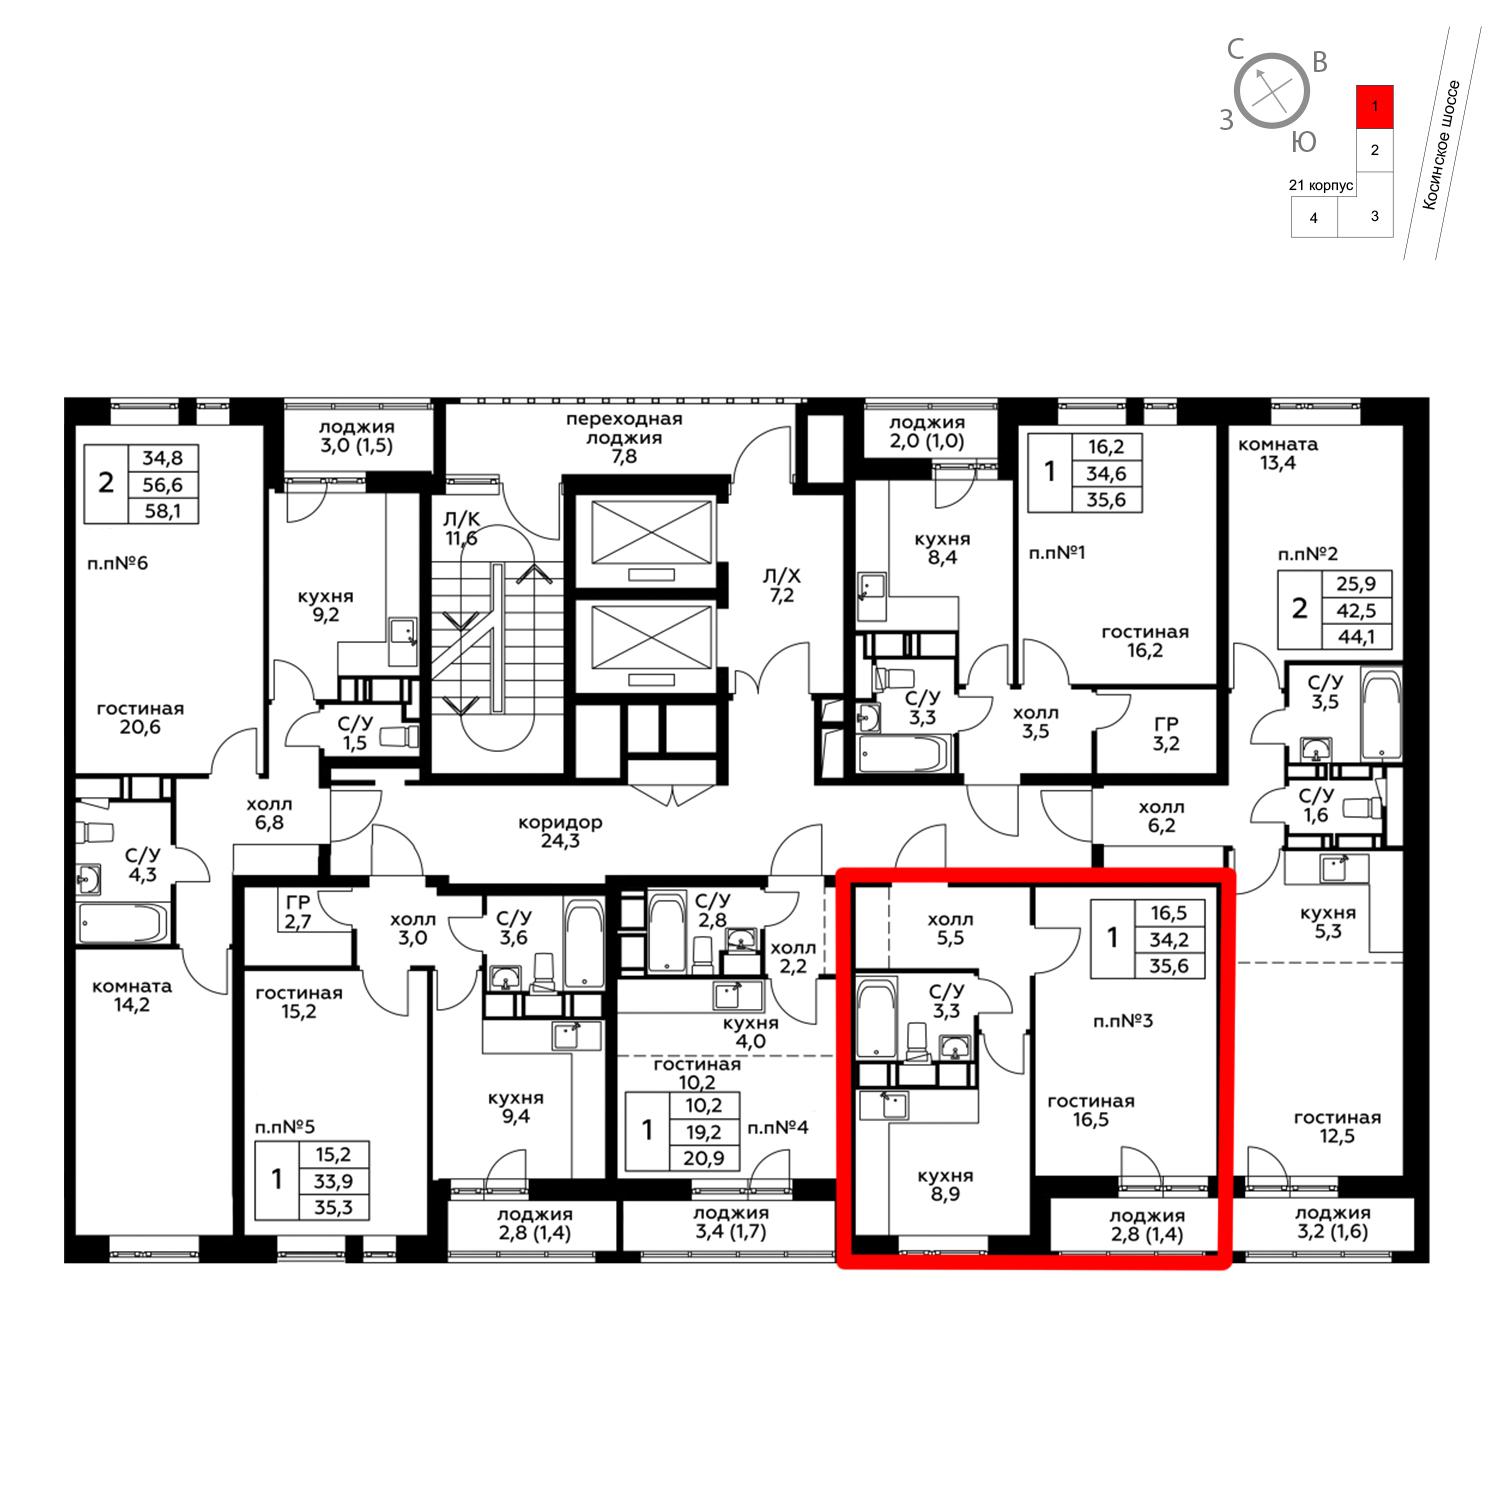 Продаётся 1-комнатная квартира в новостройке 35.8 кв.м. этаж 7/20 за 4 628 940 руб 